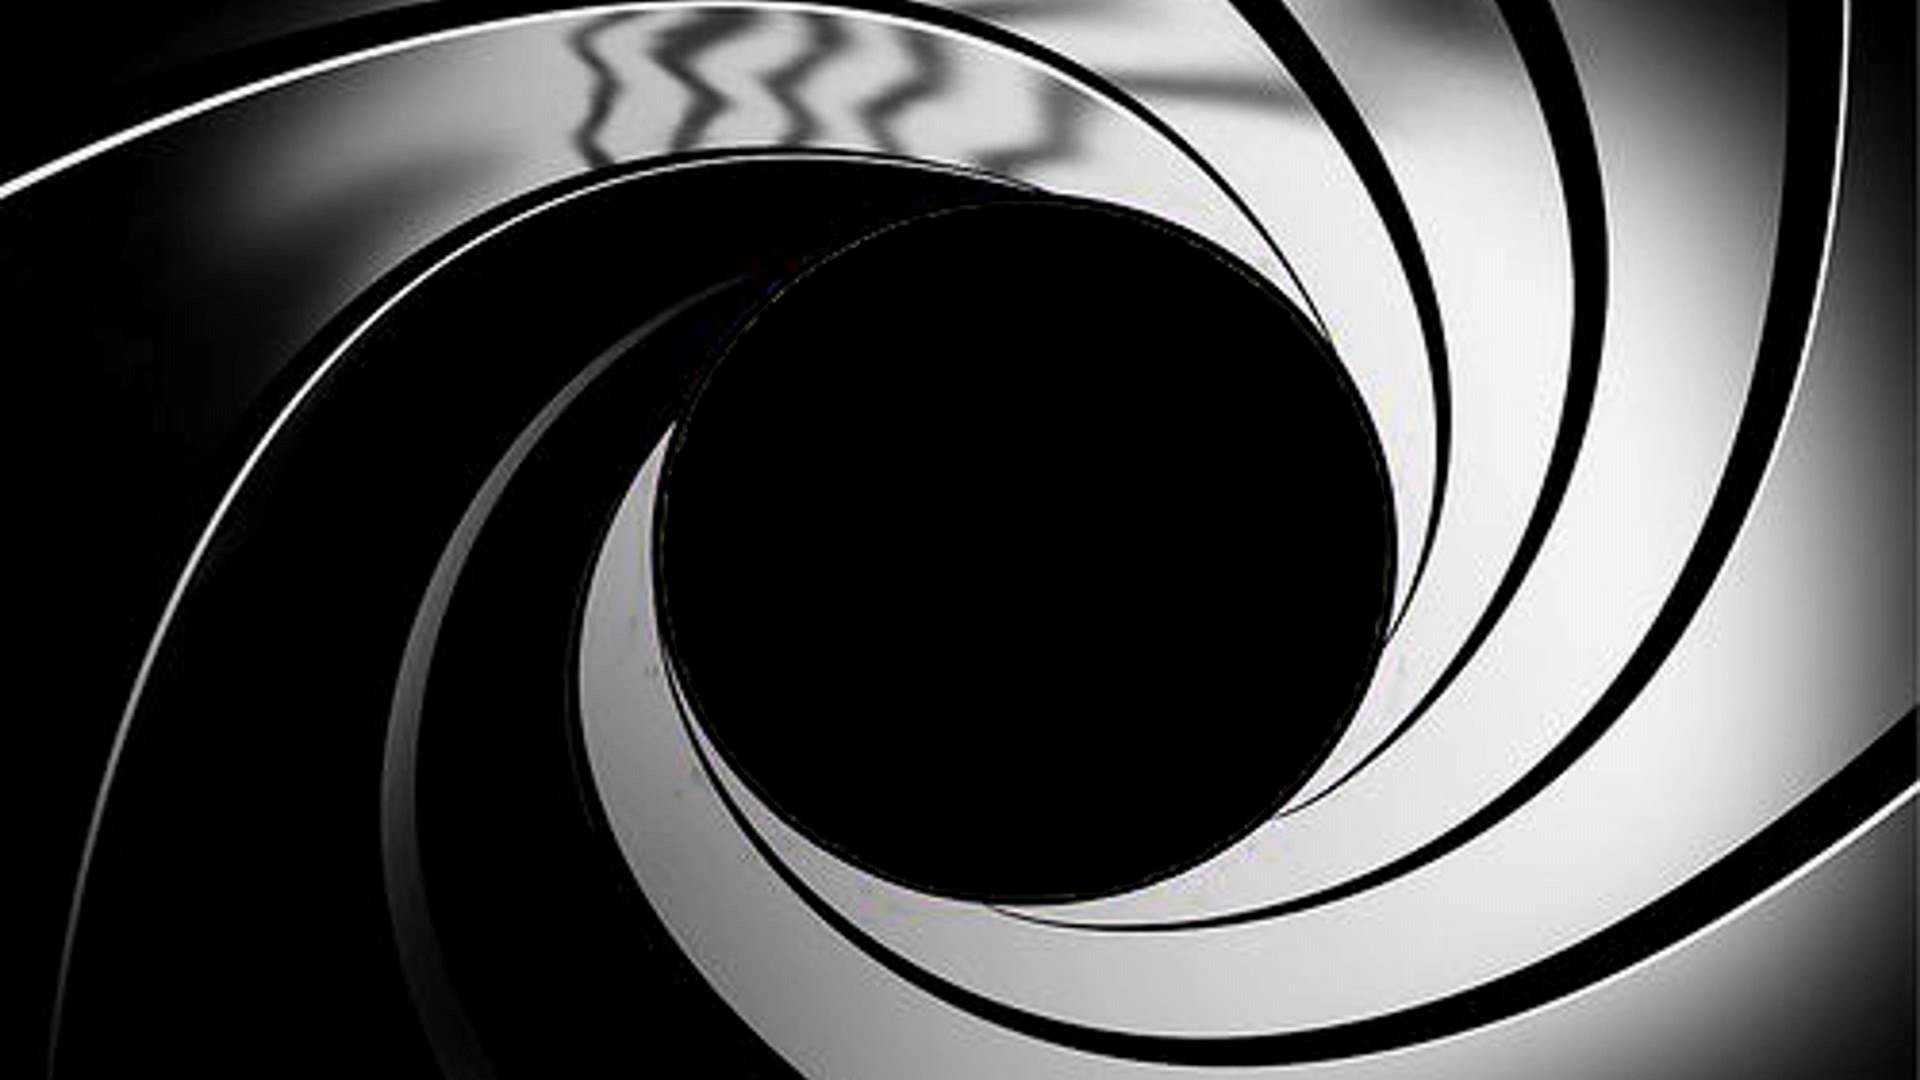 1920x1080 James Bond Gun Barrel Wallpaper James bond gun